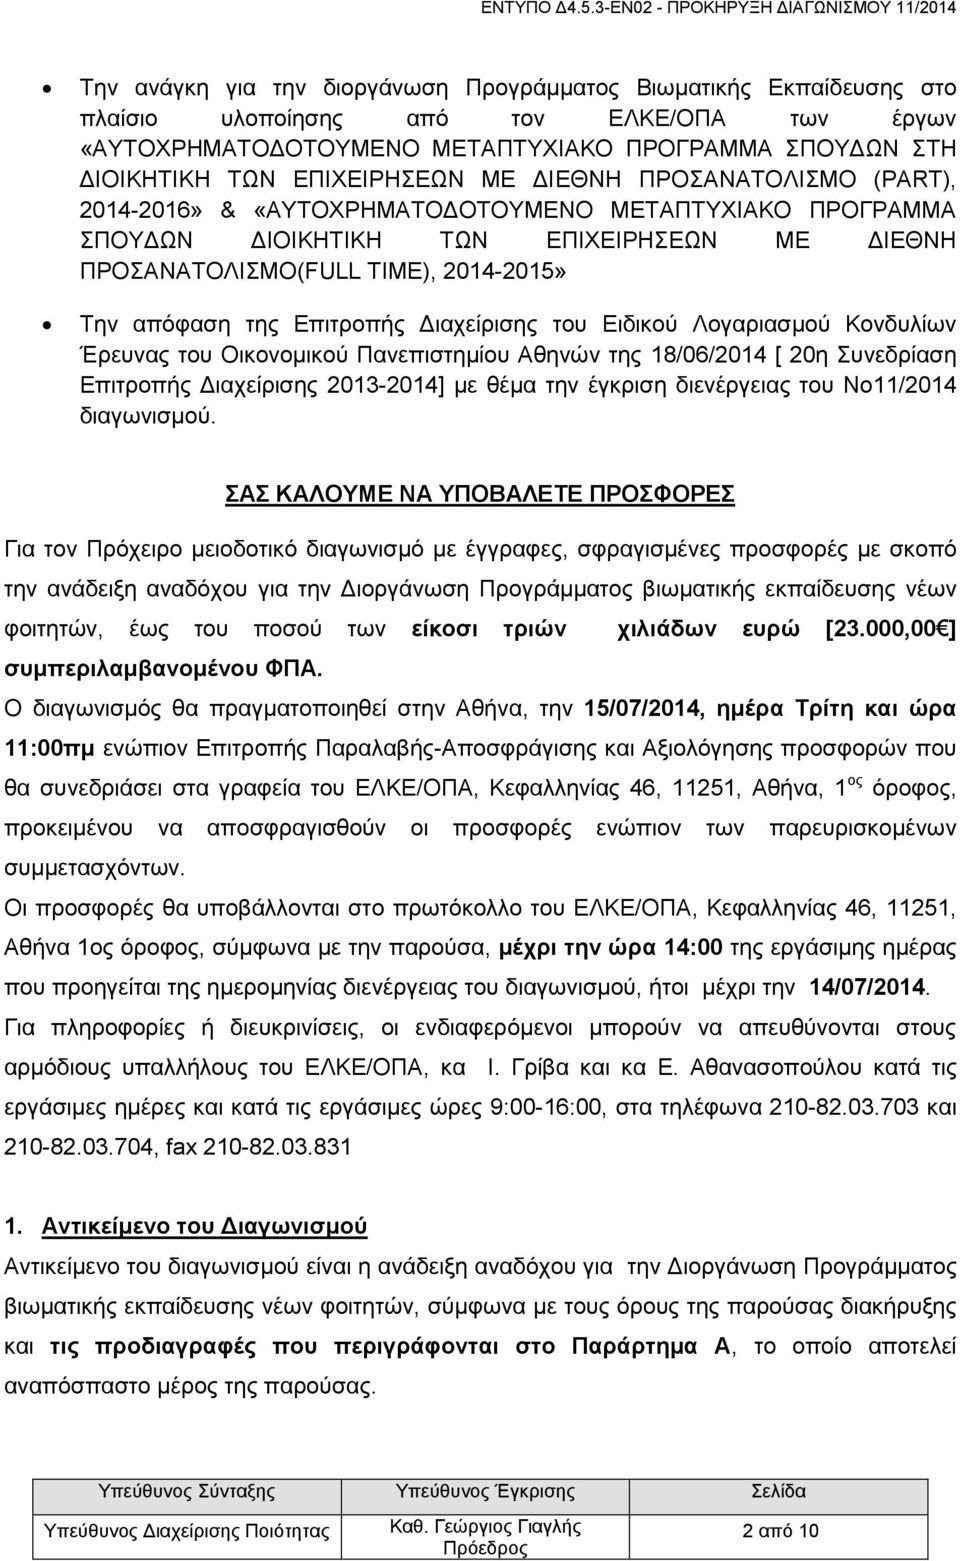 της Επιτροπής Διαχείρισης του Ειδικού Λογαριασμού Κονδυλίων Έρευνας του Οικονομικού Πανεπιστημίου Αθηνών της 18/06/2014 [ 20η Συνεδρίαση Επιτροπής Διαχείρισης 2013-2014] με θέμα την έγκριση